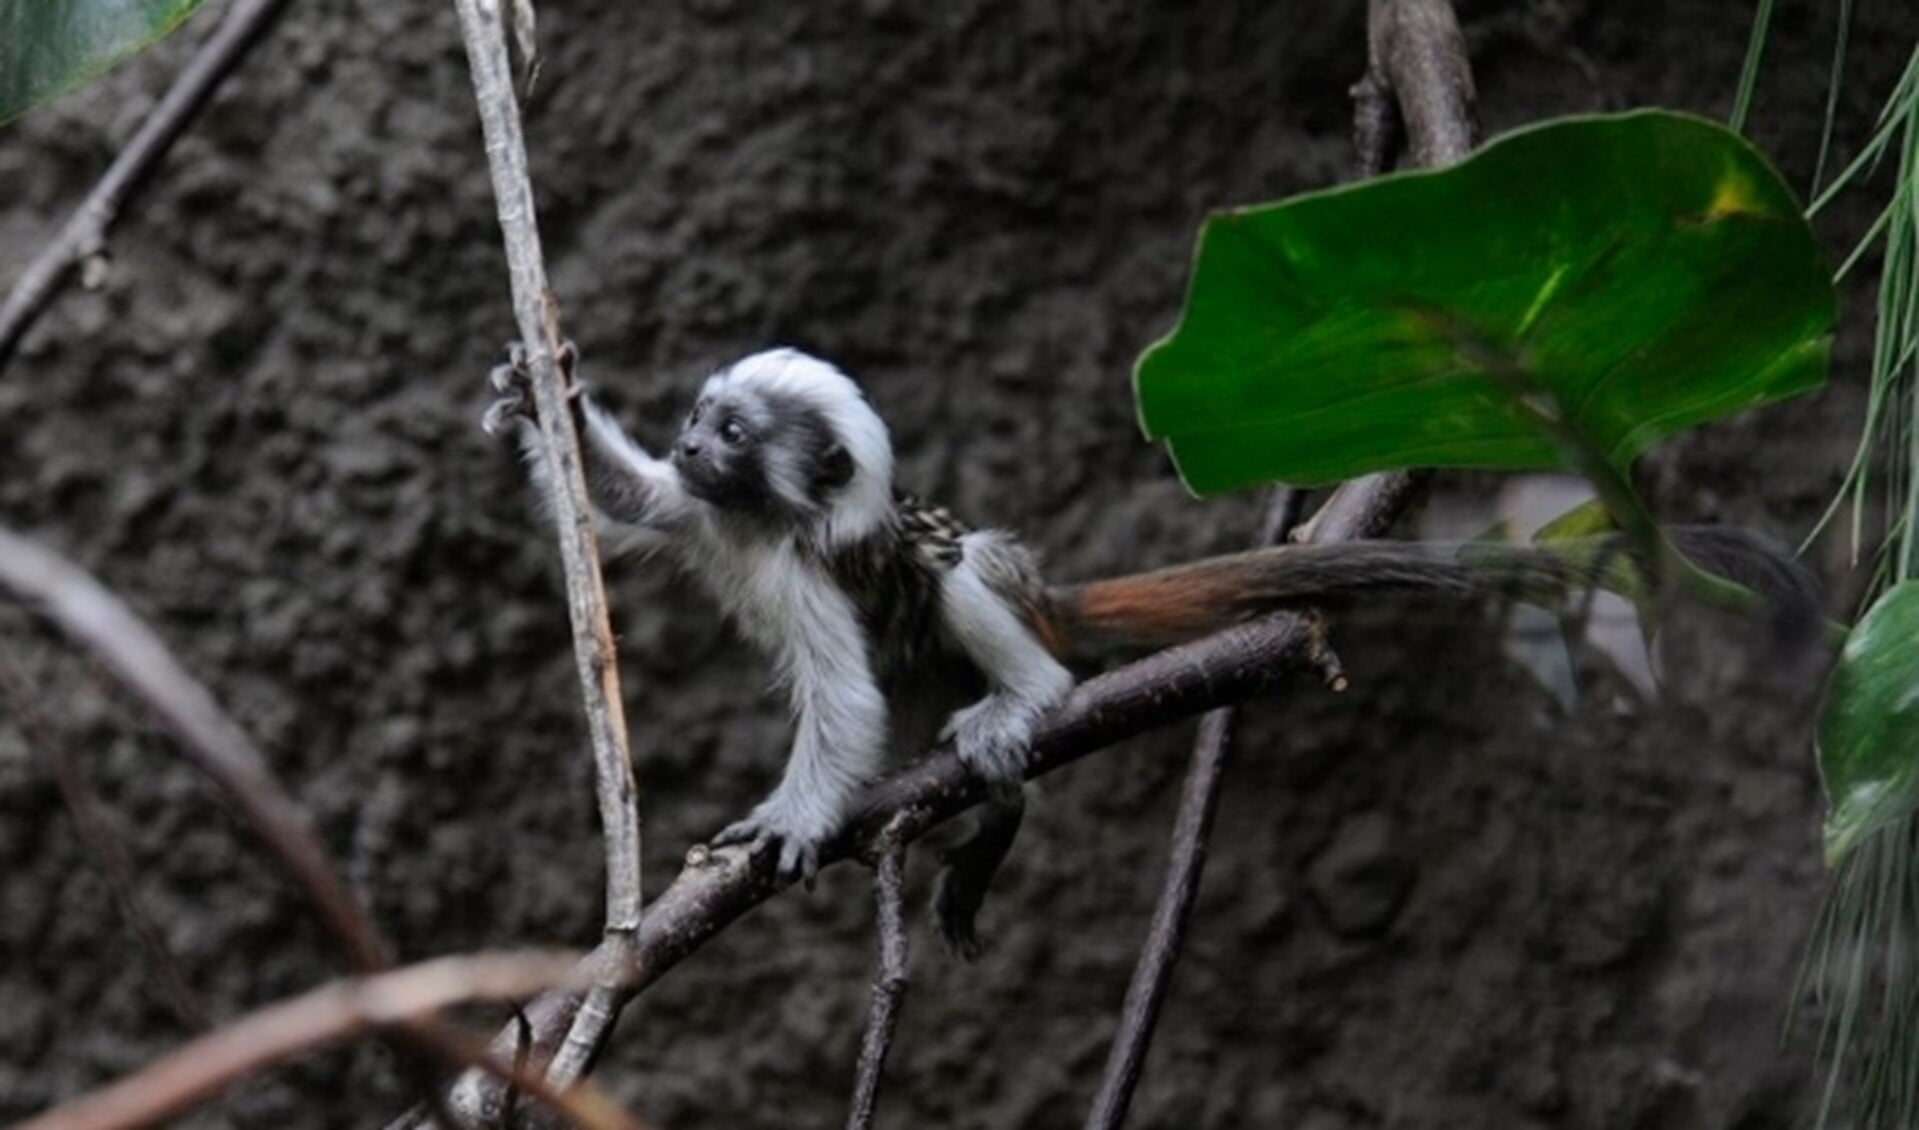  De volwassen pinché-apen hebben een opvallende witte haardos. Bij de kleintjes moet dit nog aangroeien. 